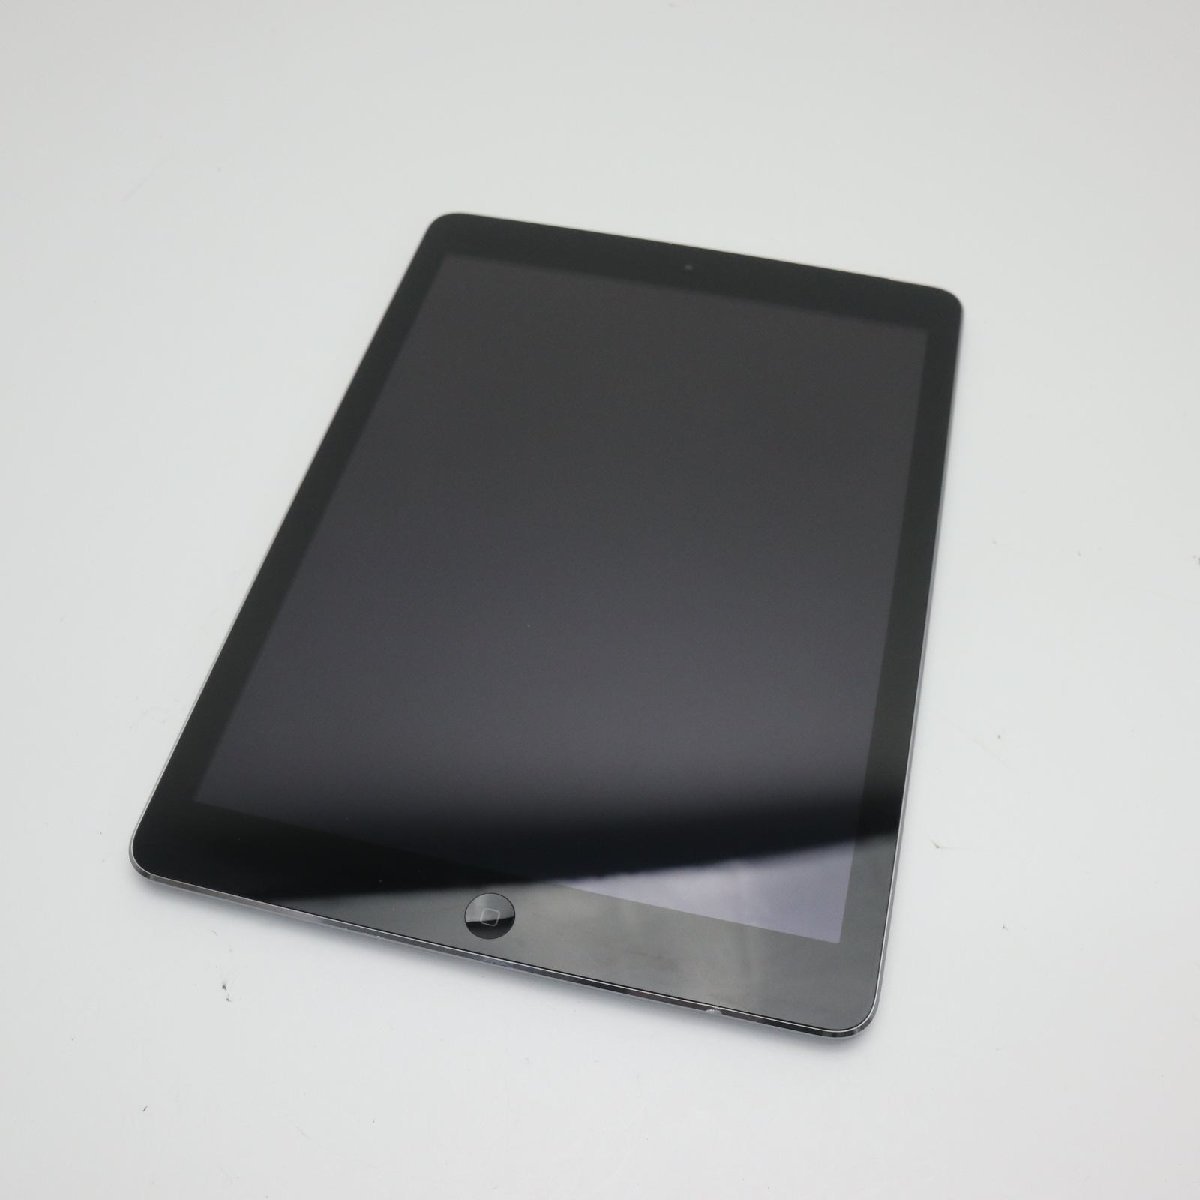 最新のデザイン 超美品 SOFTBANK iPad Air Cellular 32GB スペース